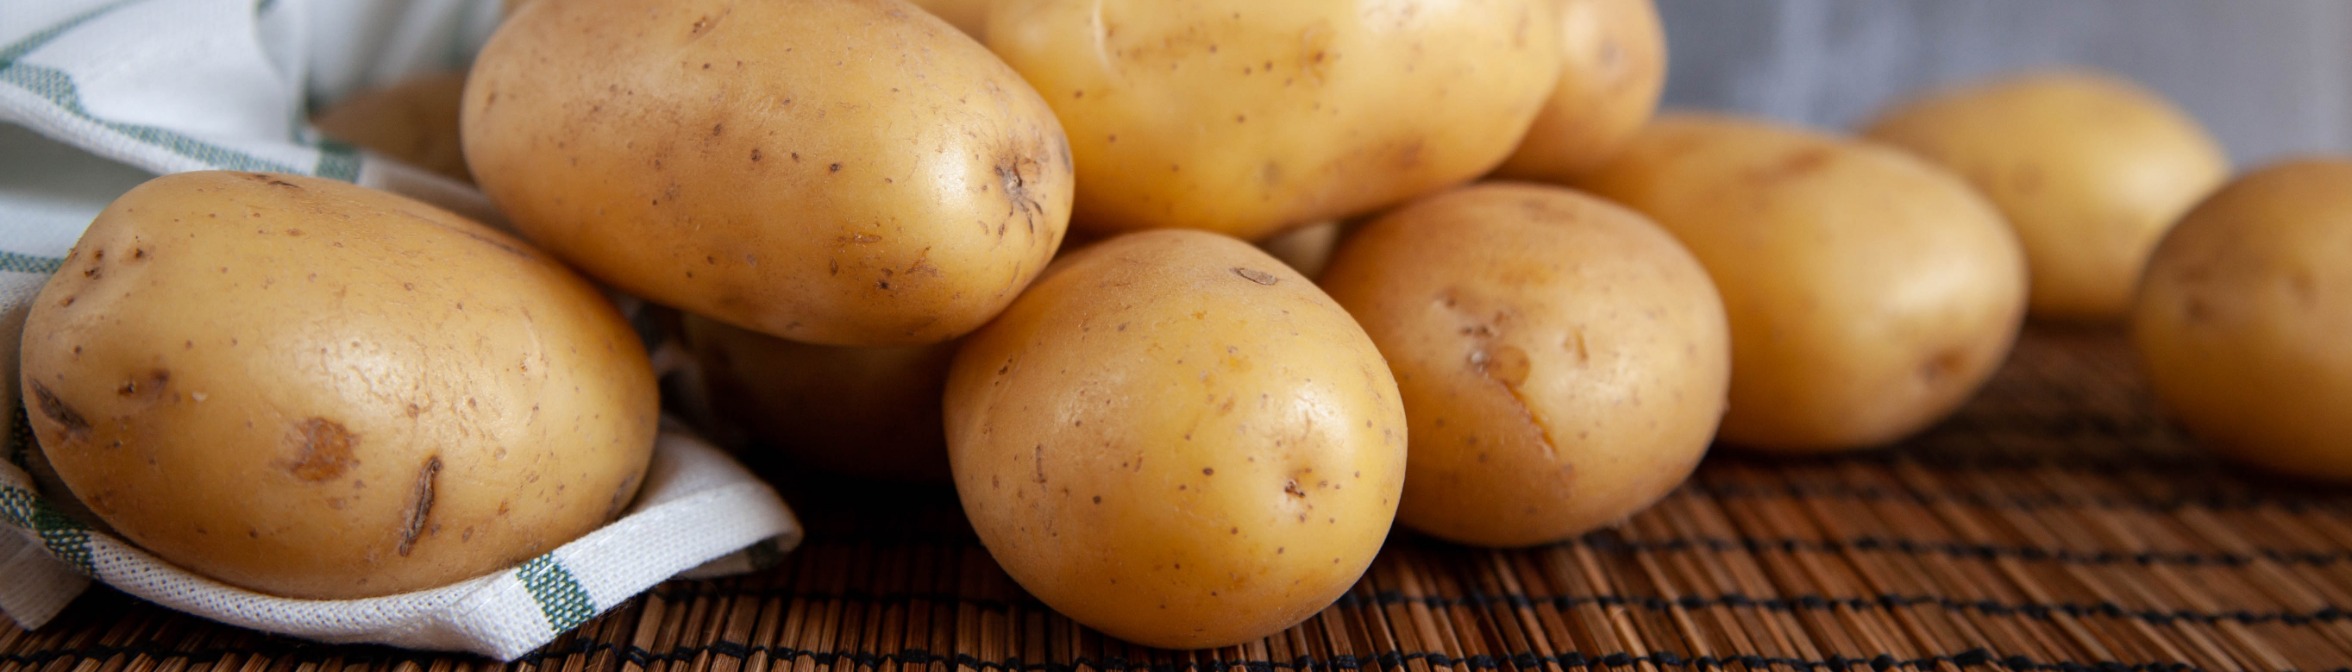 Как хранить картофель: 6 базовых правил — Ozon Клуб